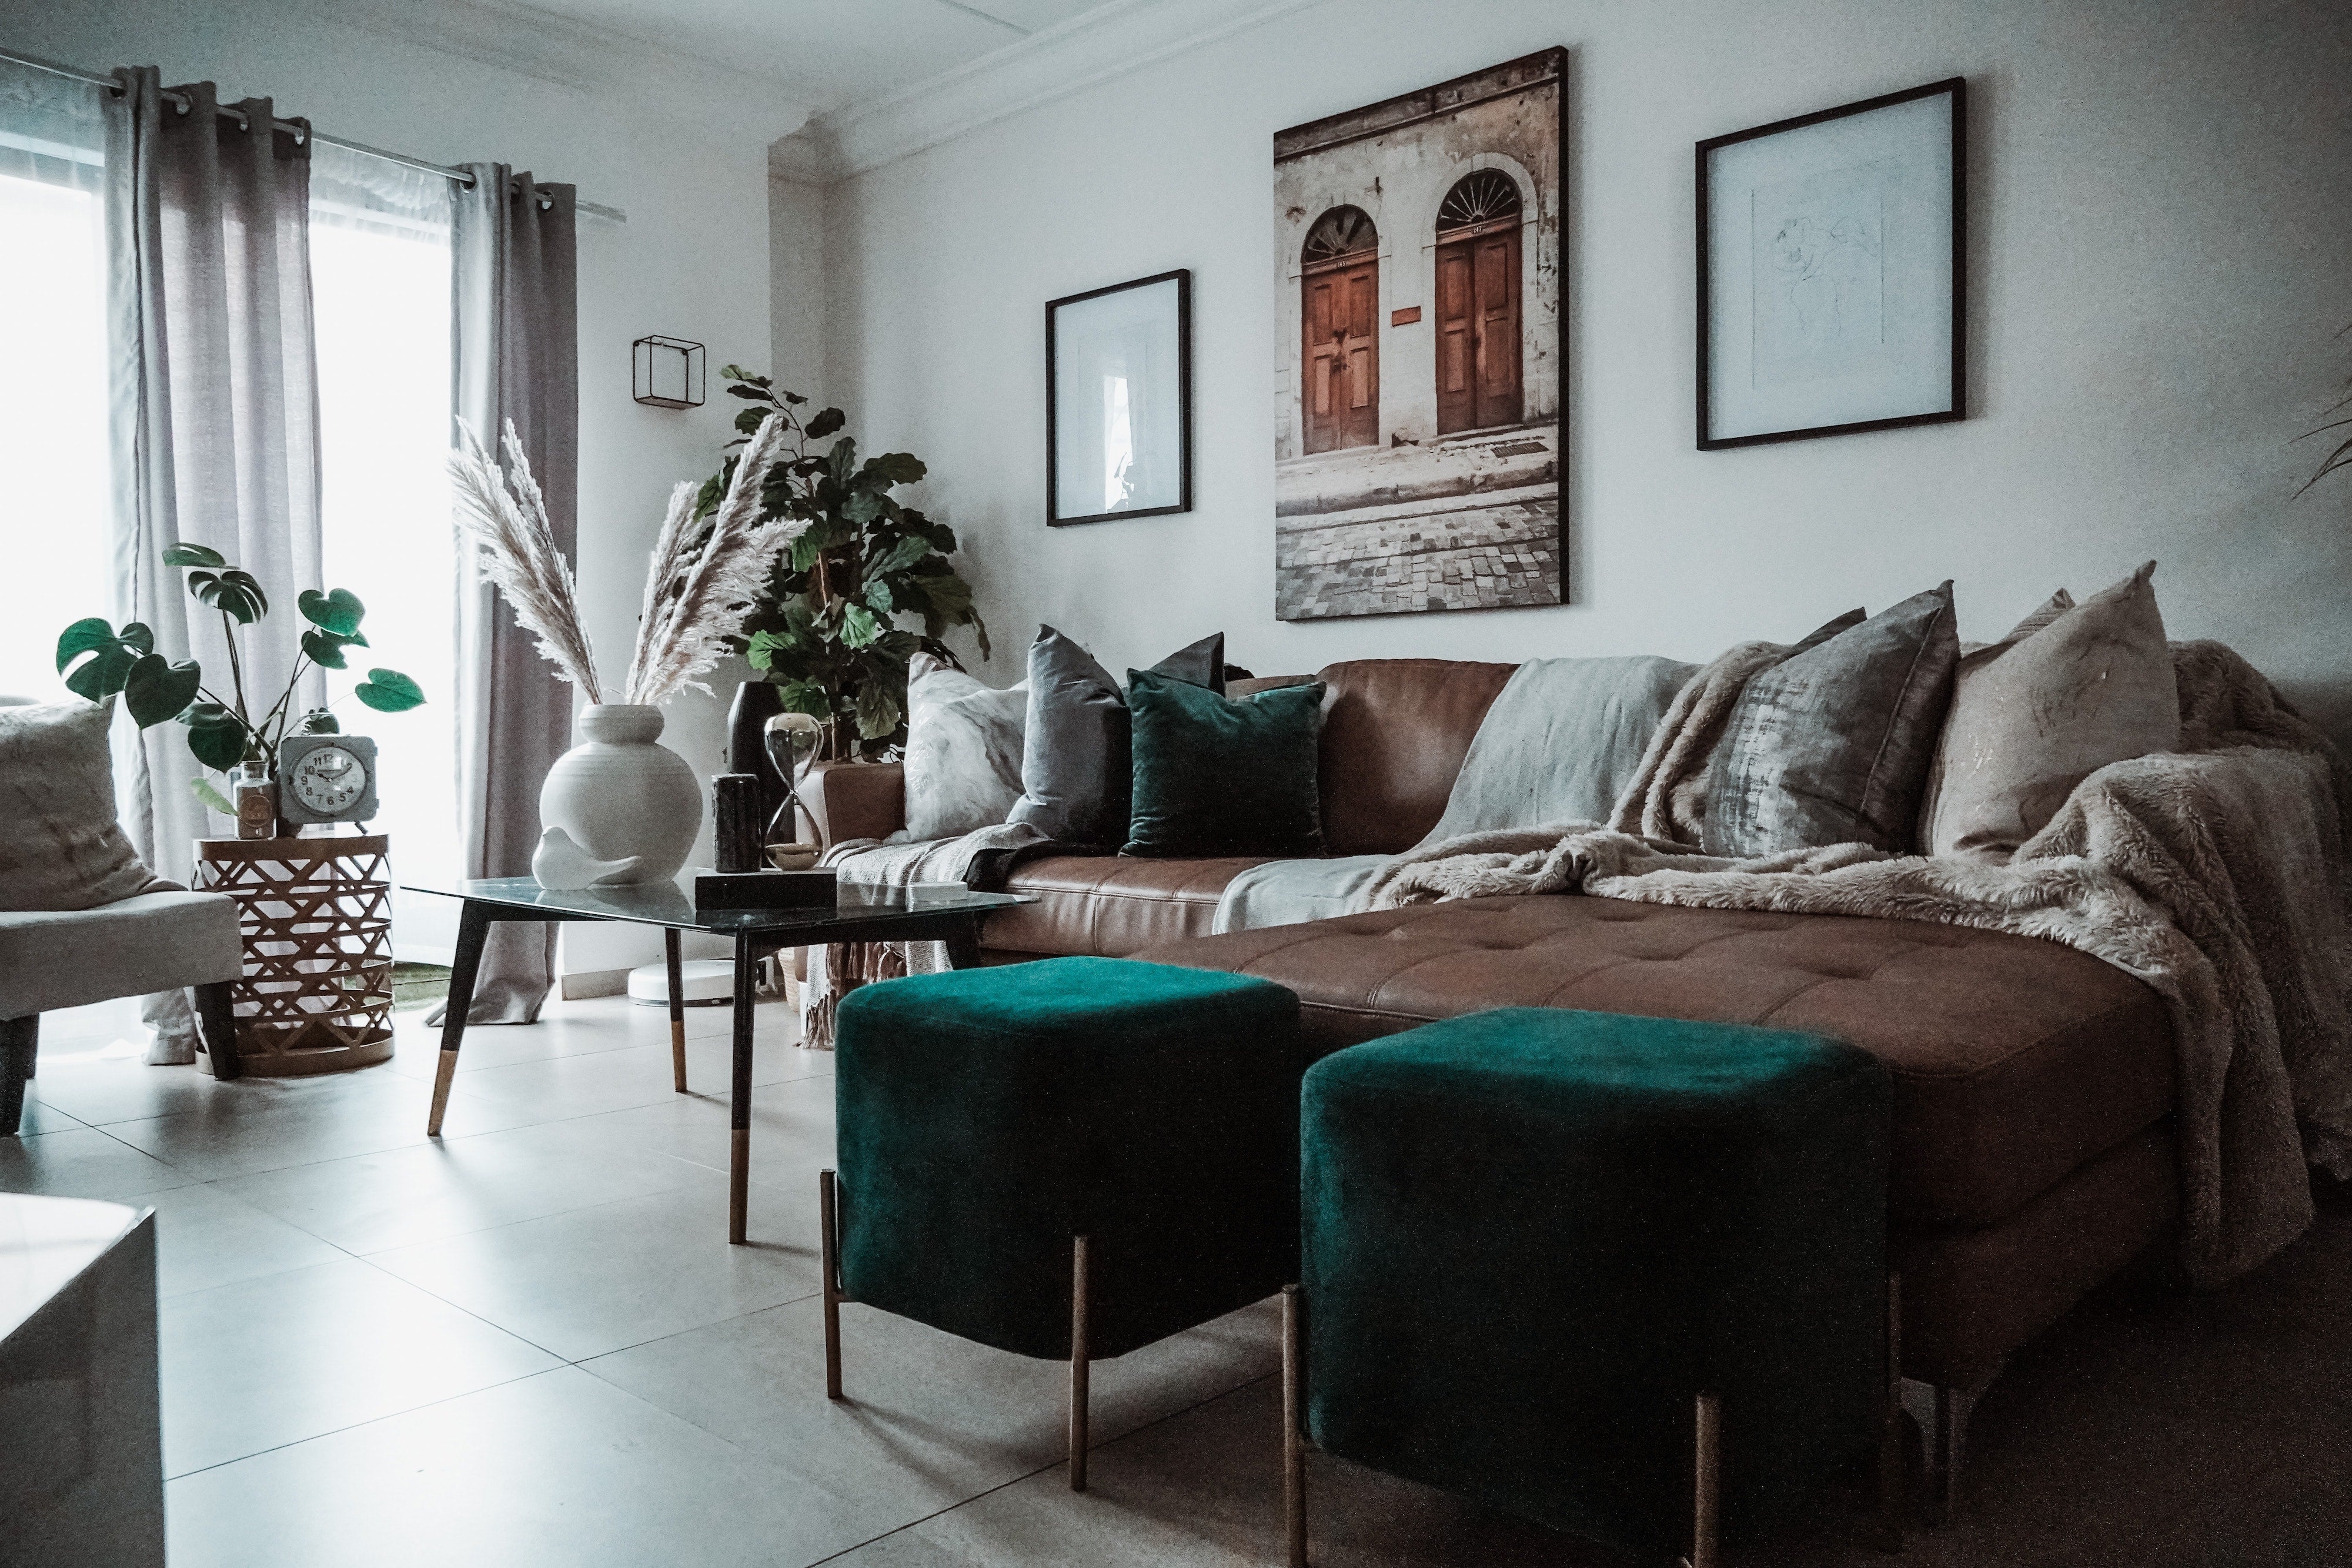 Stile e originalità: ecco qualche consiglio per arredare la tua casa in perfetto stile scandinavo! - AVA & MAY - Italia